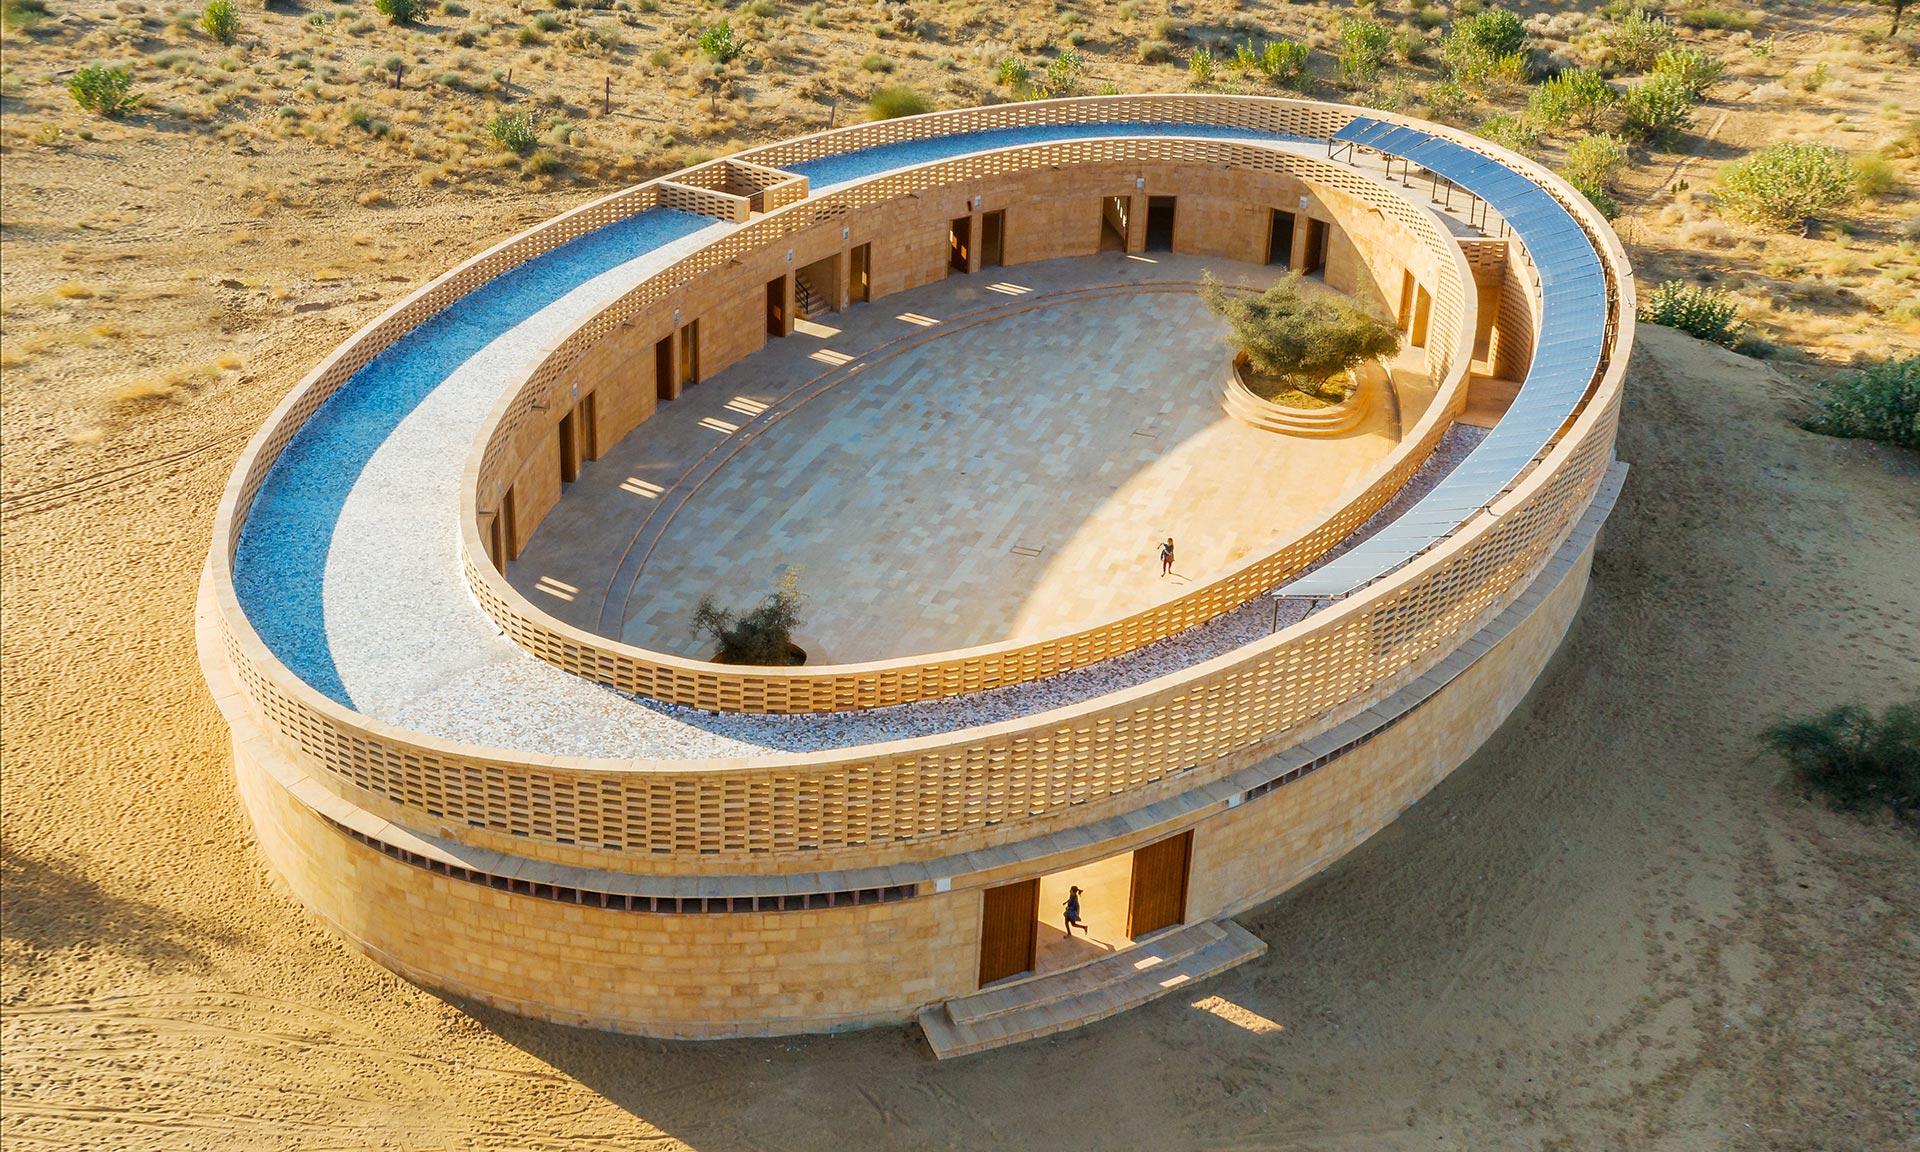 Diana Kellogg postavila v Indii z místního pískovce dívčí školu s tvarem oválu